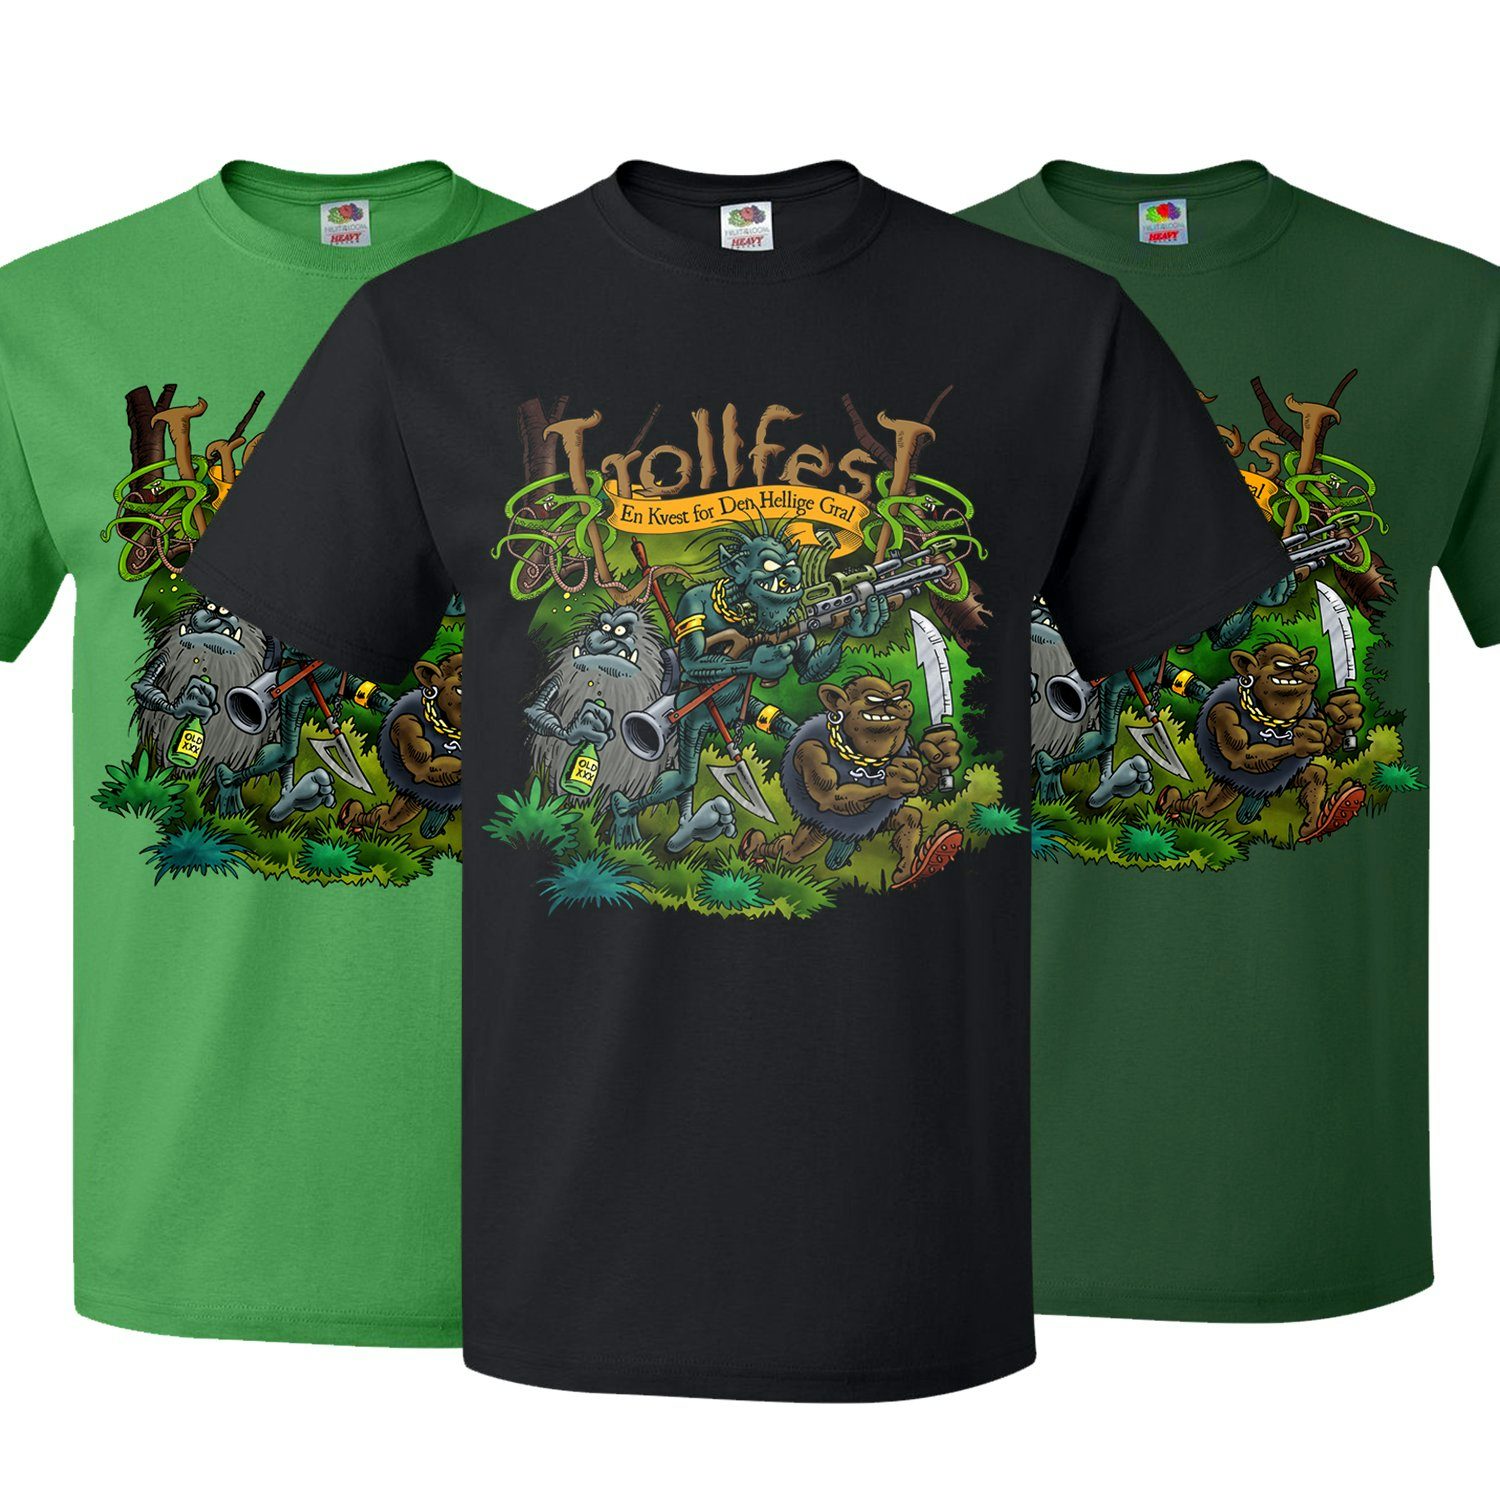 Trollfest Shirts